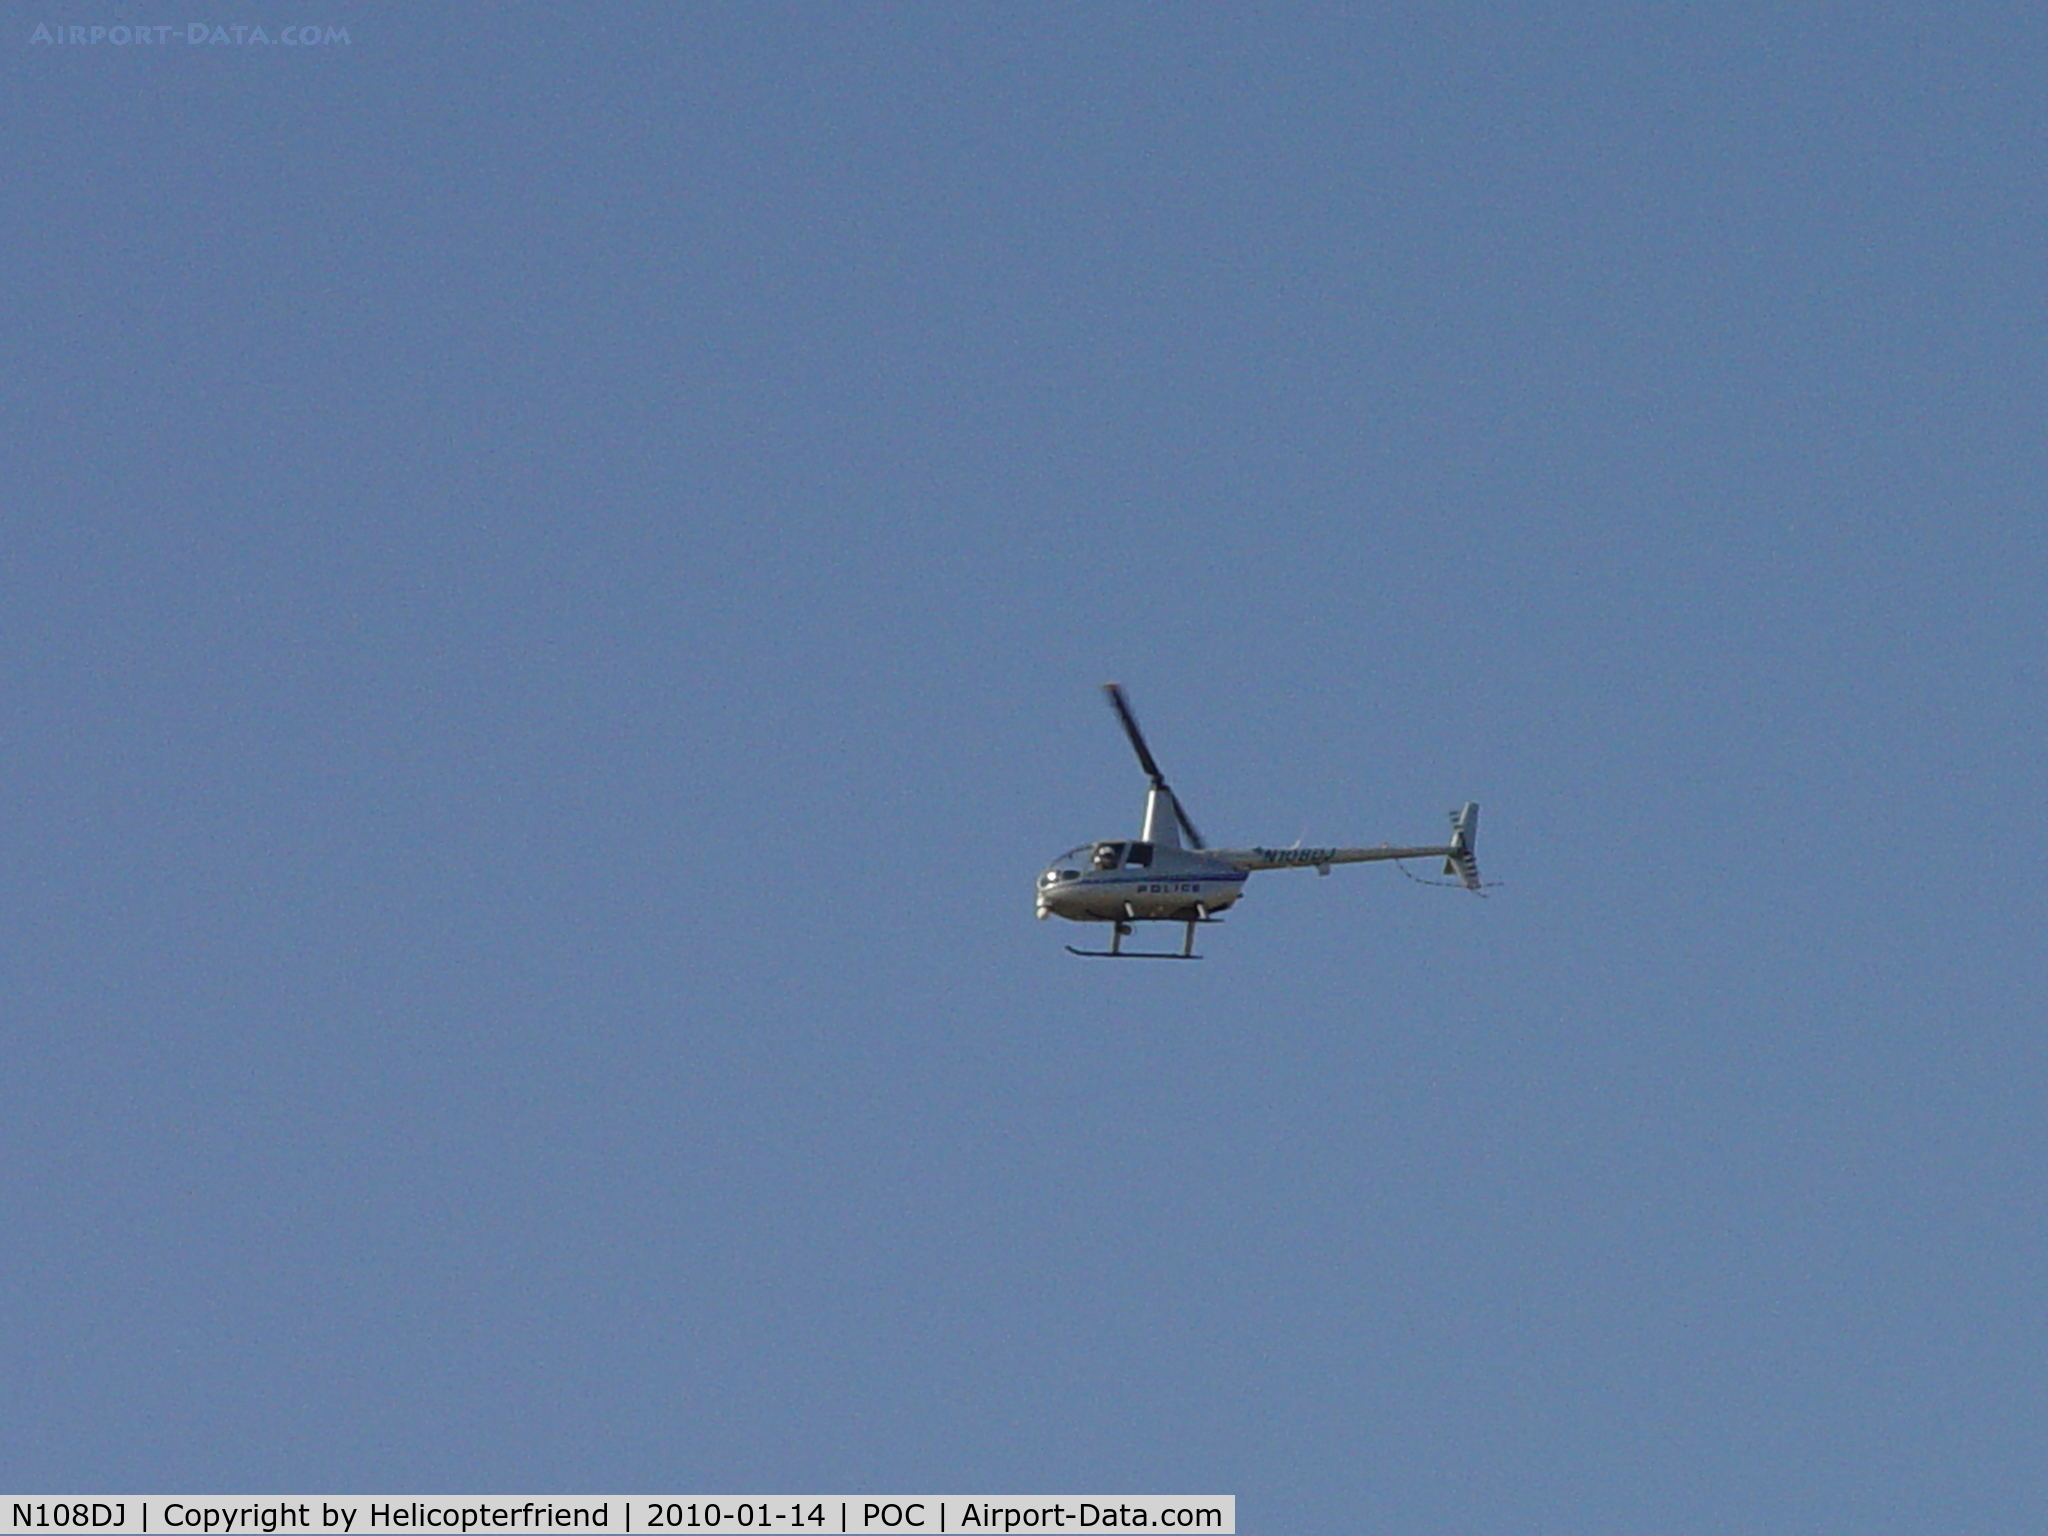 N108DJ, 2001 Robinson R44 C/N 1060, El Monte PD flying southwest over Brackett